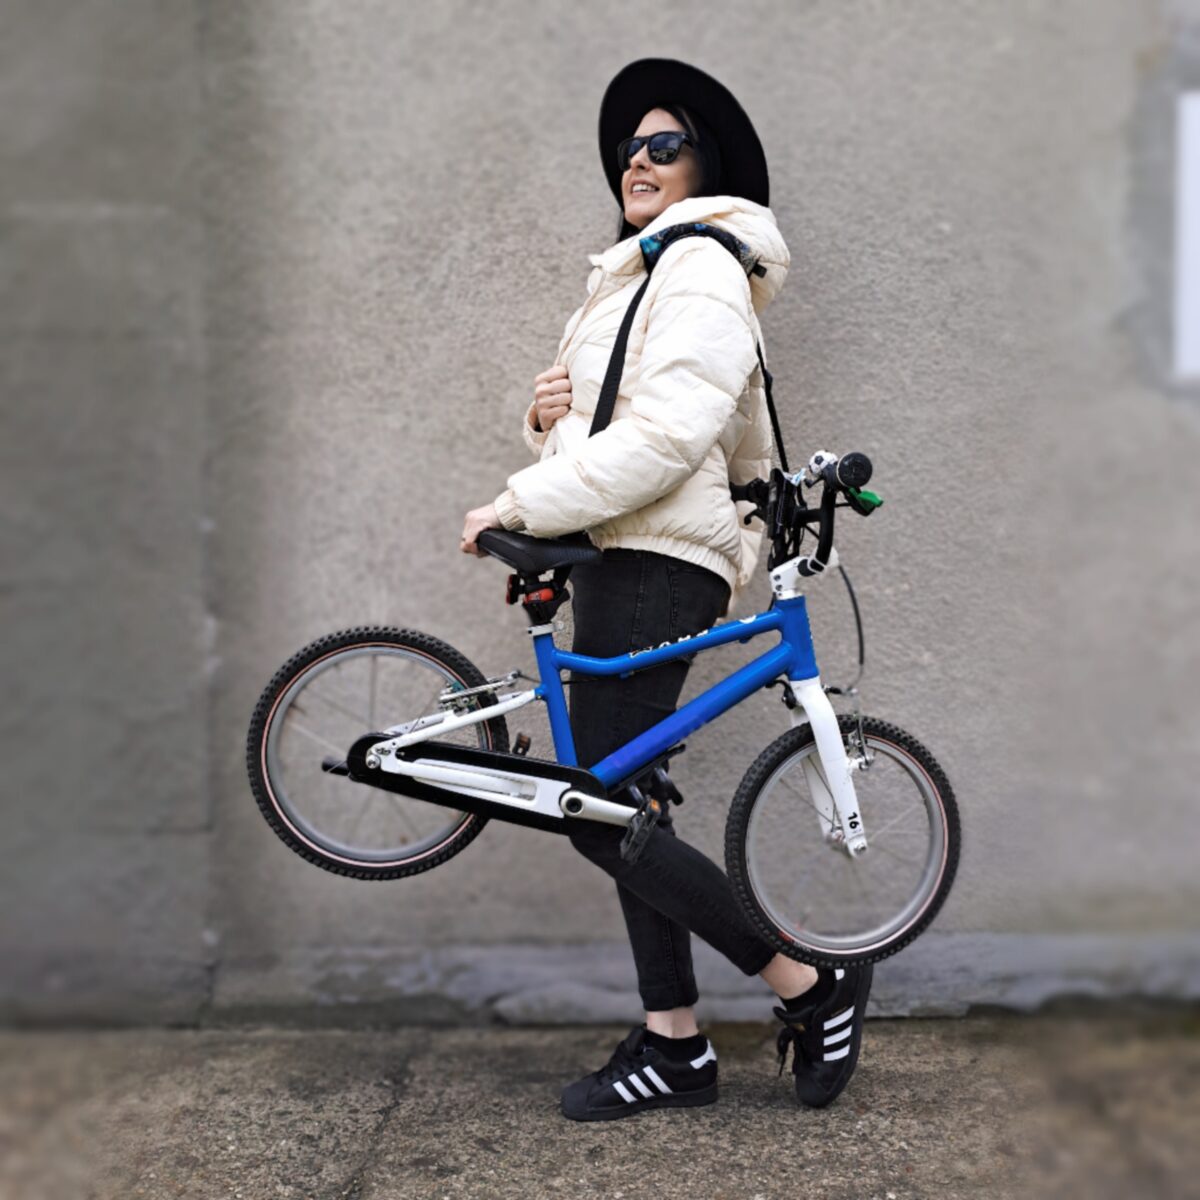 pas do noszenia rowerka i hulajnogi kobieta trzyma rowerek na pasku